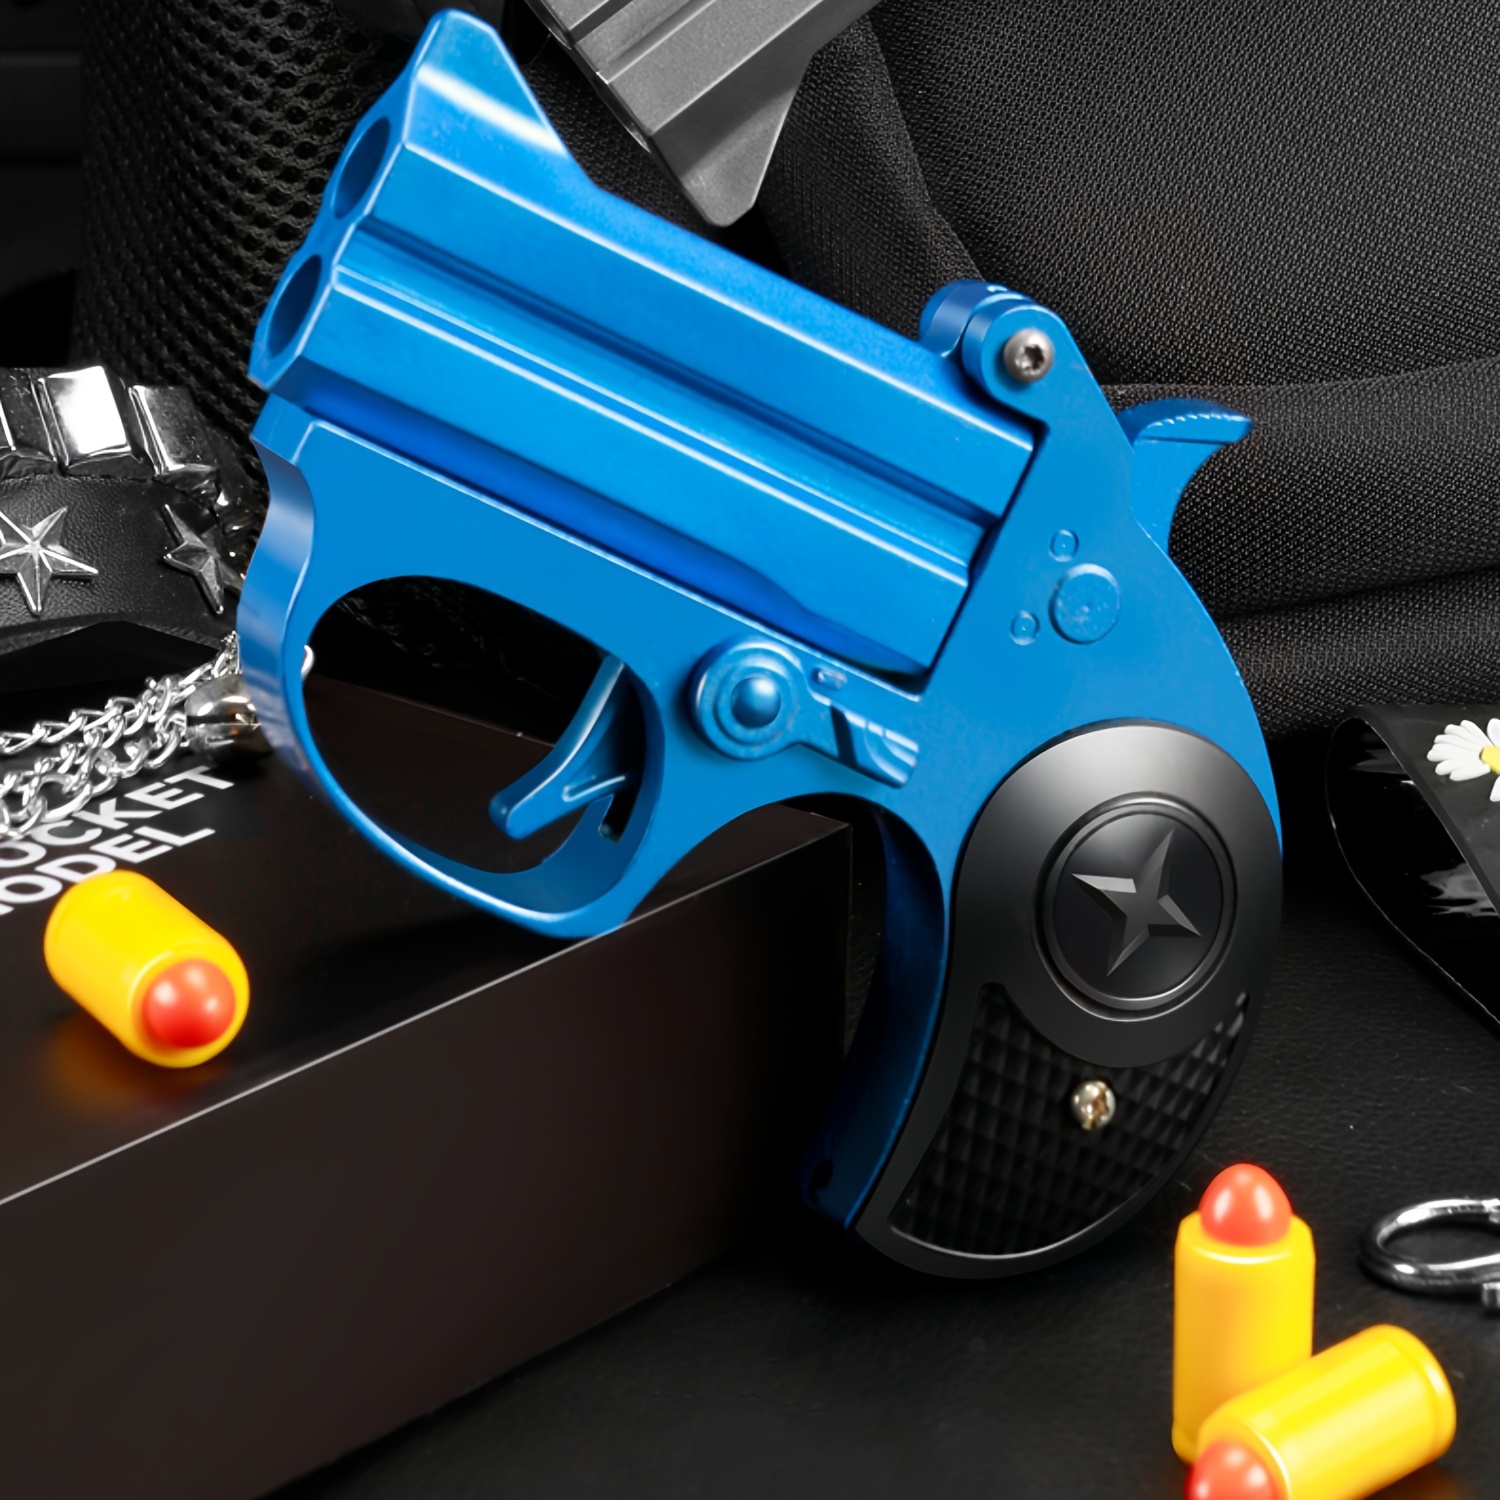 Achetez en gros Toy Guns Soft Bullet En Plastique Réaliste Jouet